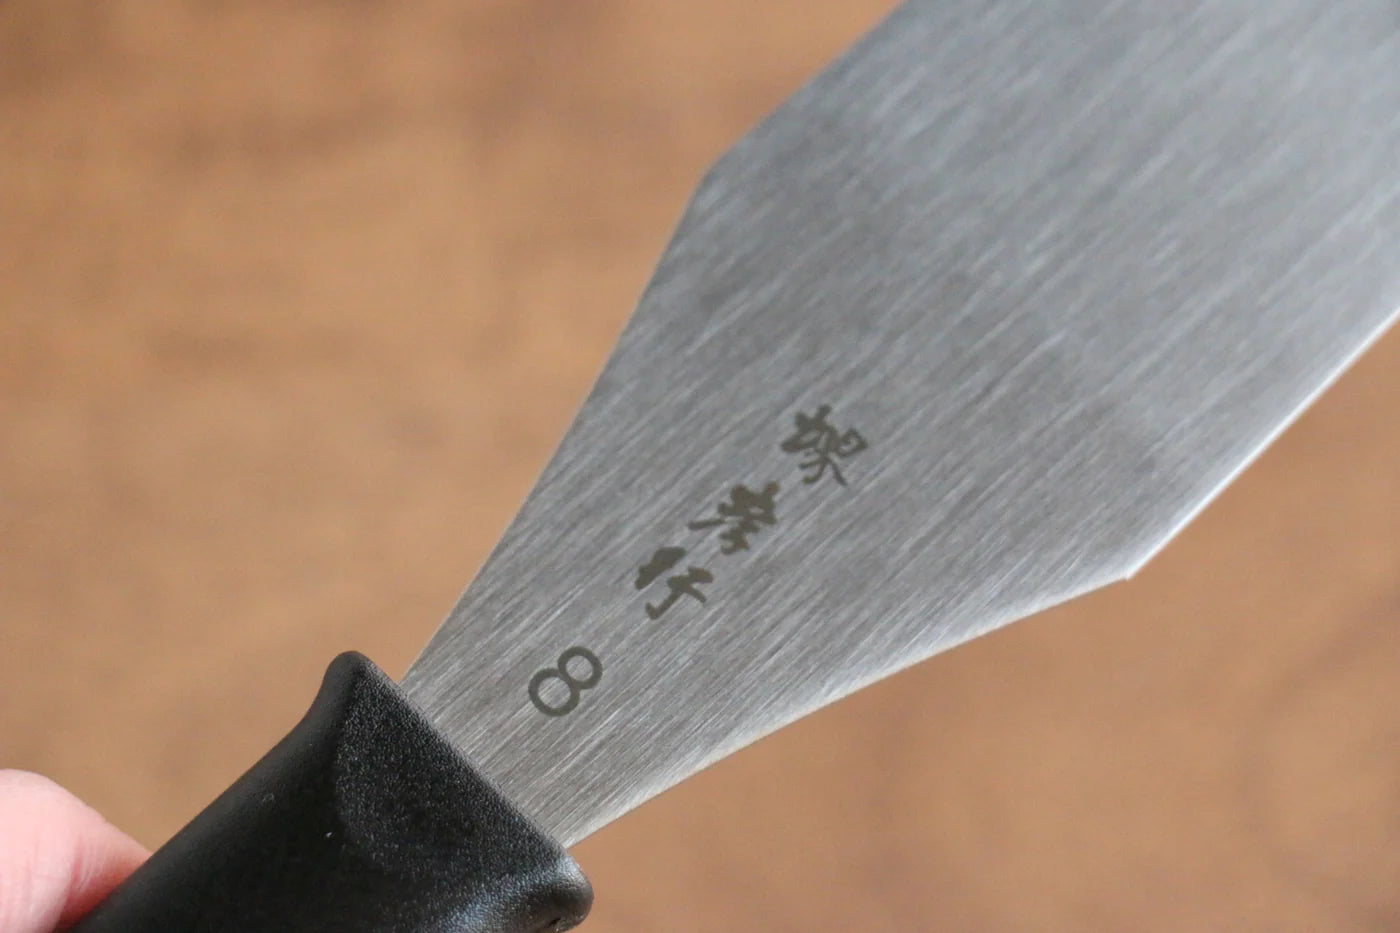 Japanisches Palettenmesser aus rostfreiem Stahl der Marke Sakai Takayuki, 245 mm